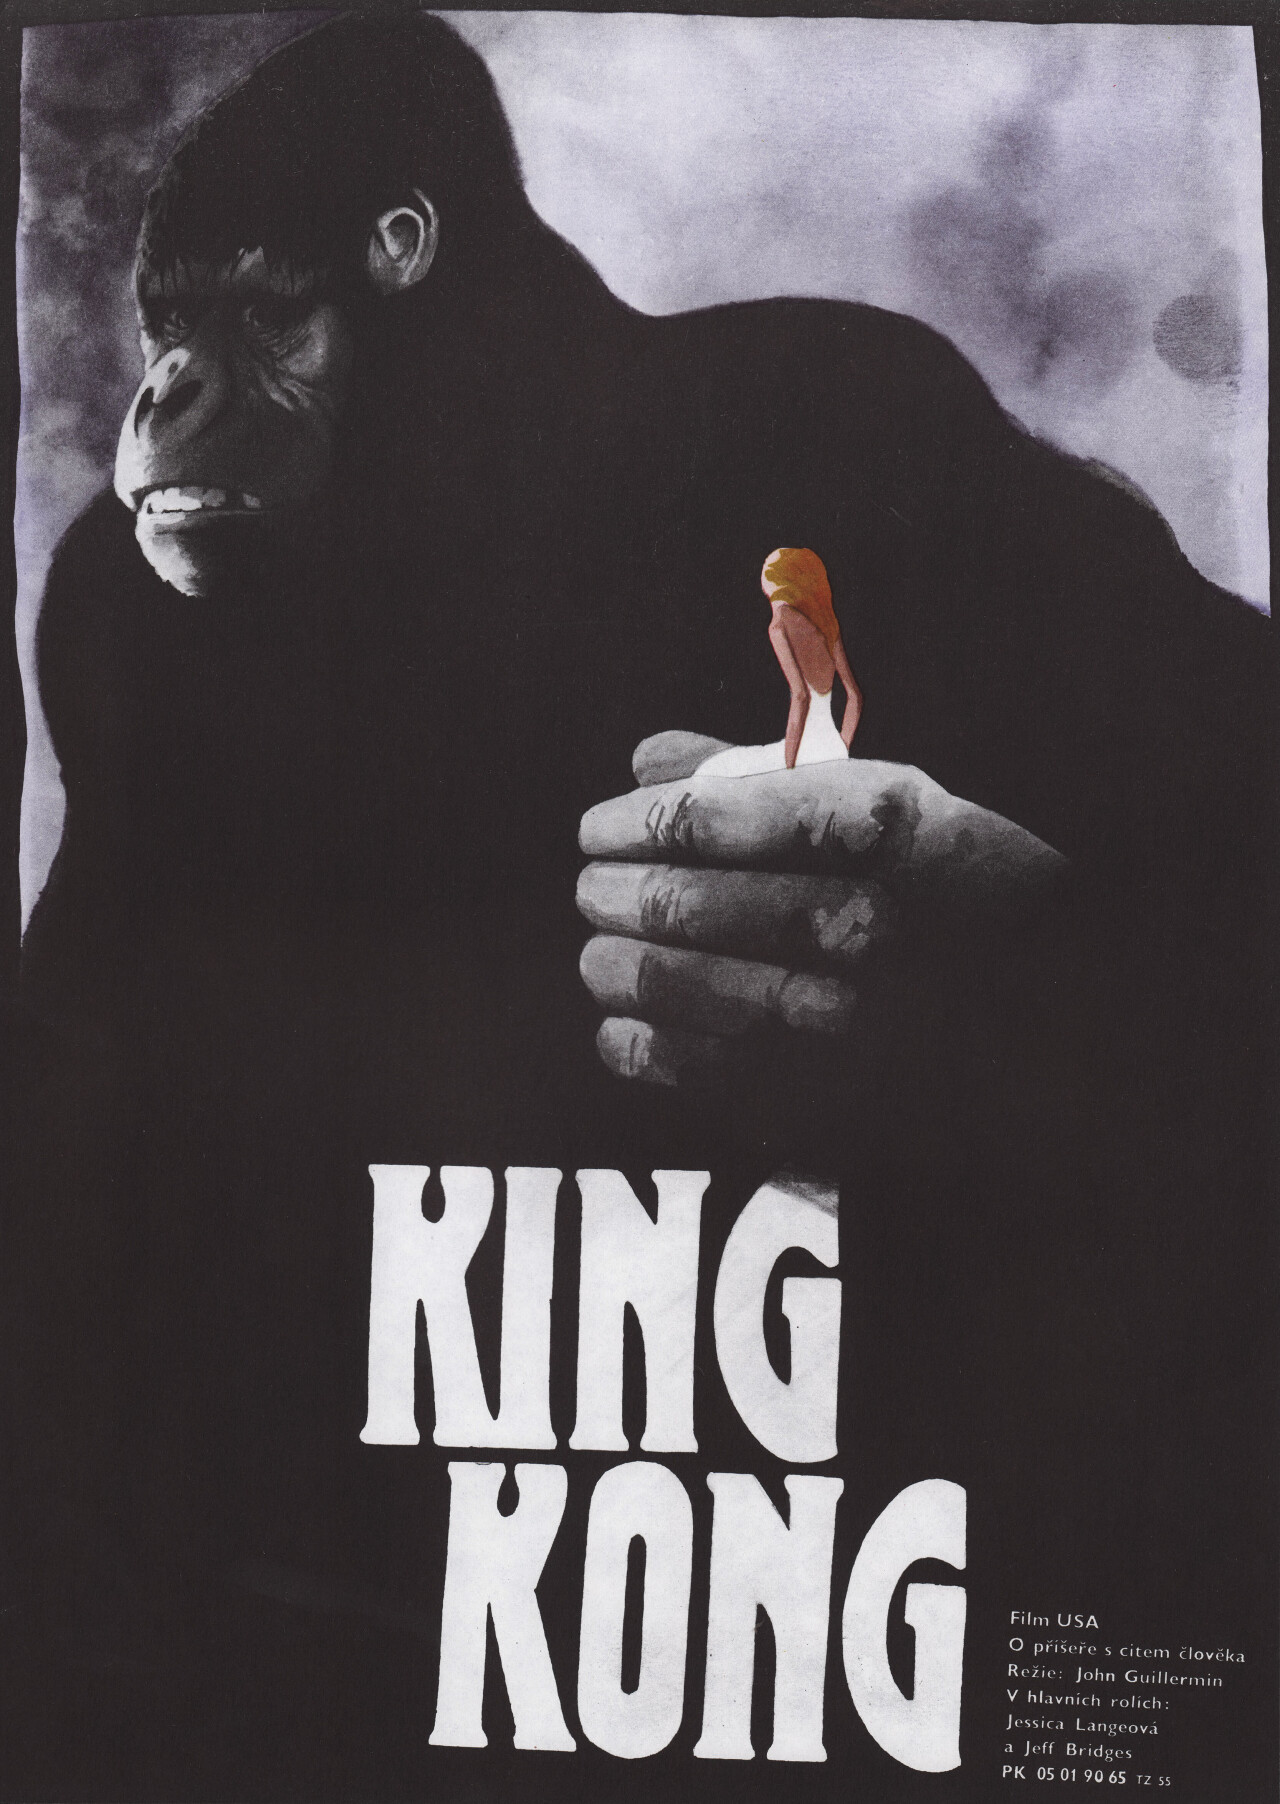 Кинг Конг (King Kong, 1976), режиссёр Джон Гиллермин, чехословацкий постер к фильму, автор Зденек Влах (монстры, 1989 год)